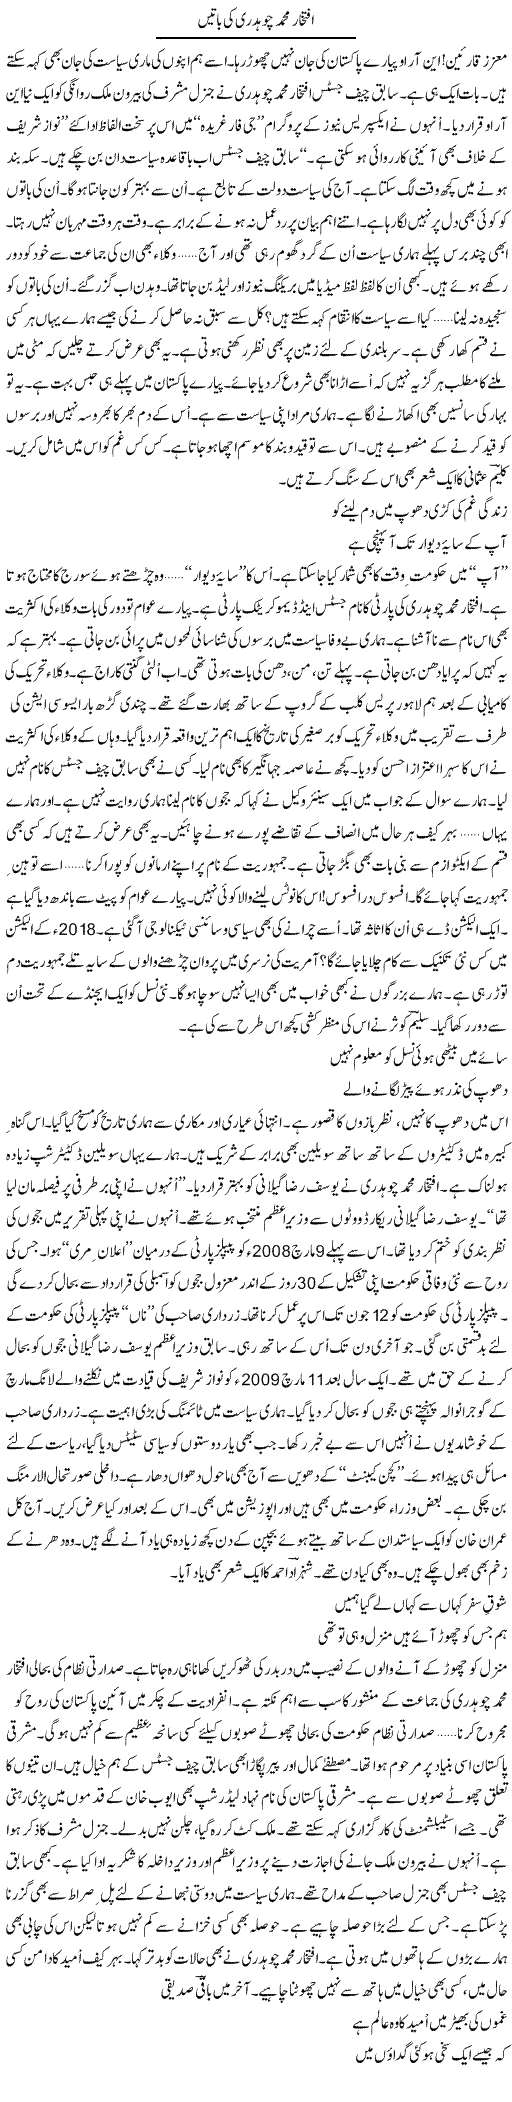 Iftikhar Muhammad Chaudhry Ki Batain | Ejaz Hafeez Khan | Daily Urdu Columns